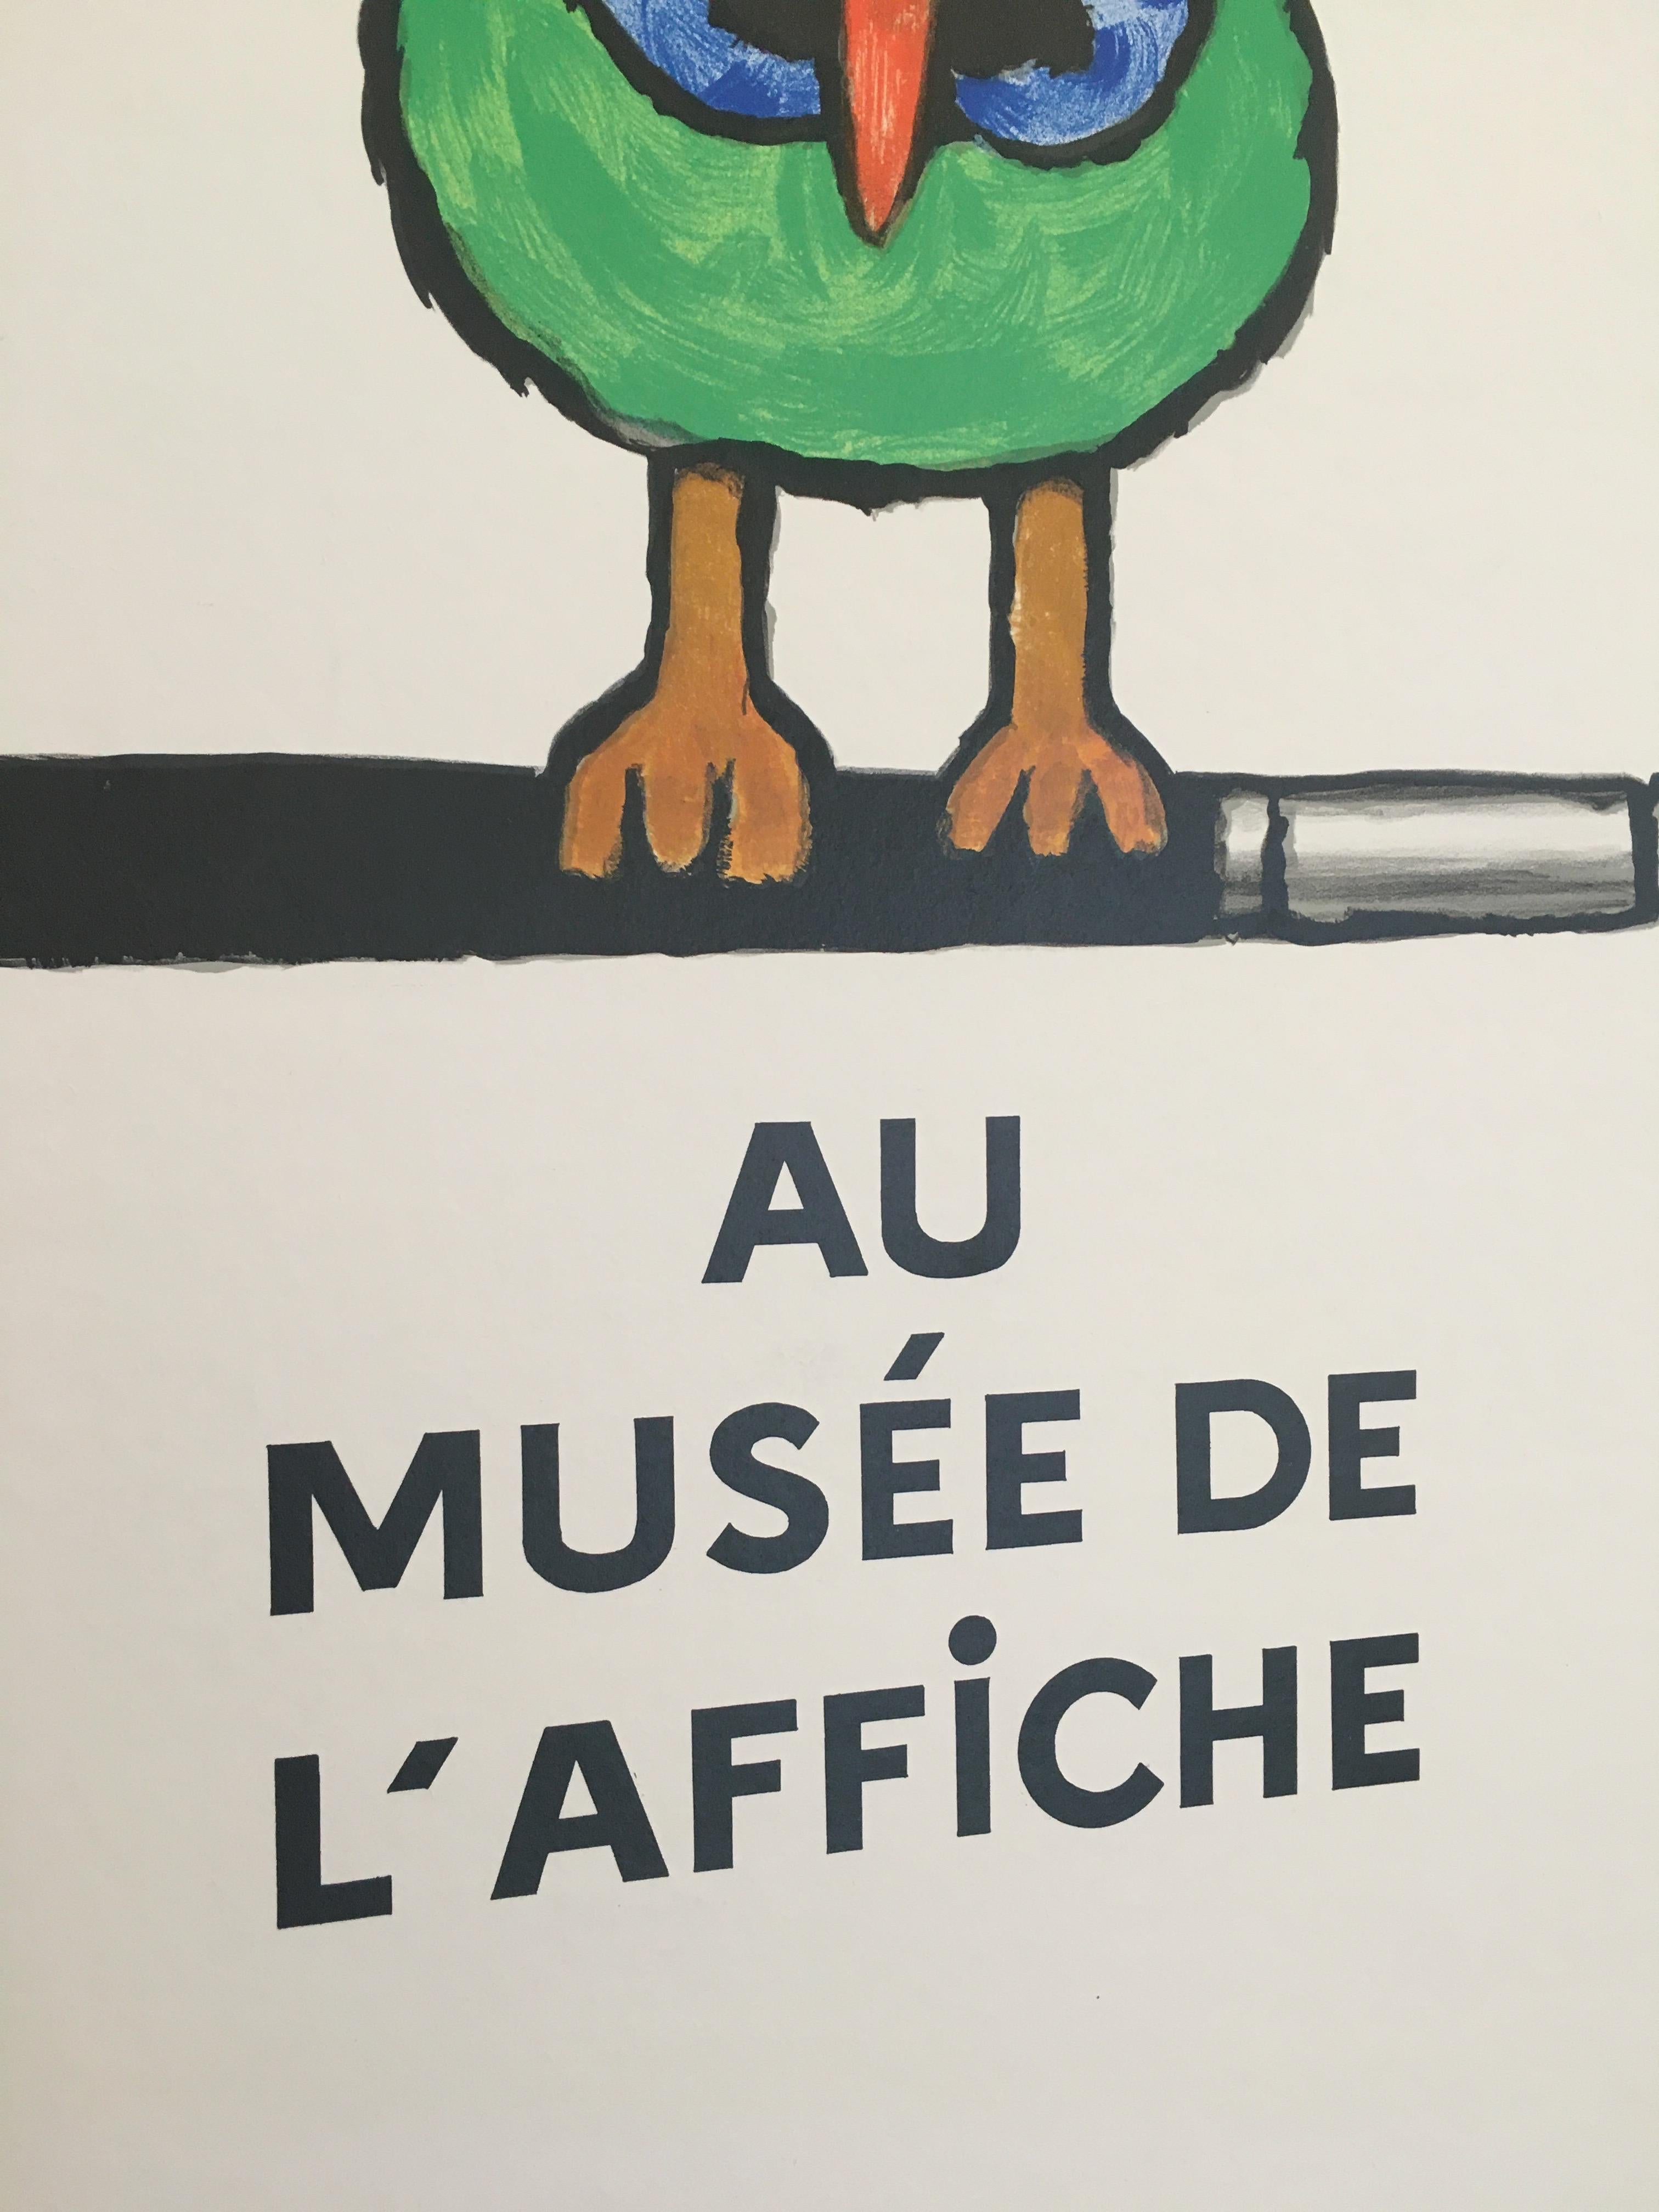 Paper Savignac Bird 'Au Musee De L’Affich' Original Vintage French Exhibition Poster For Sale